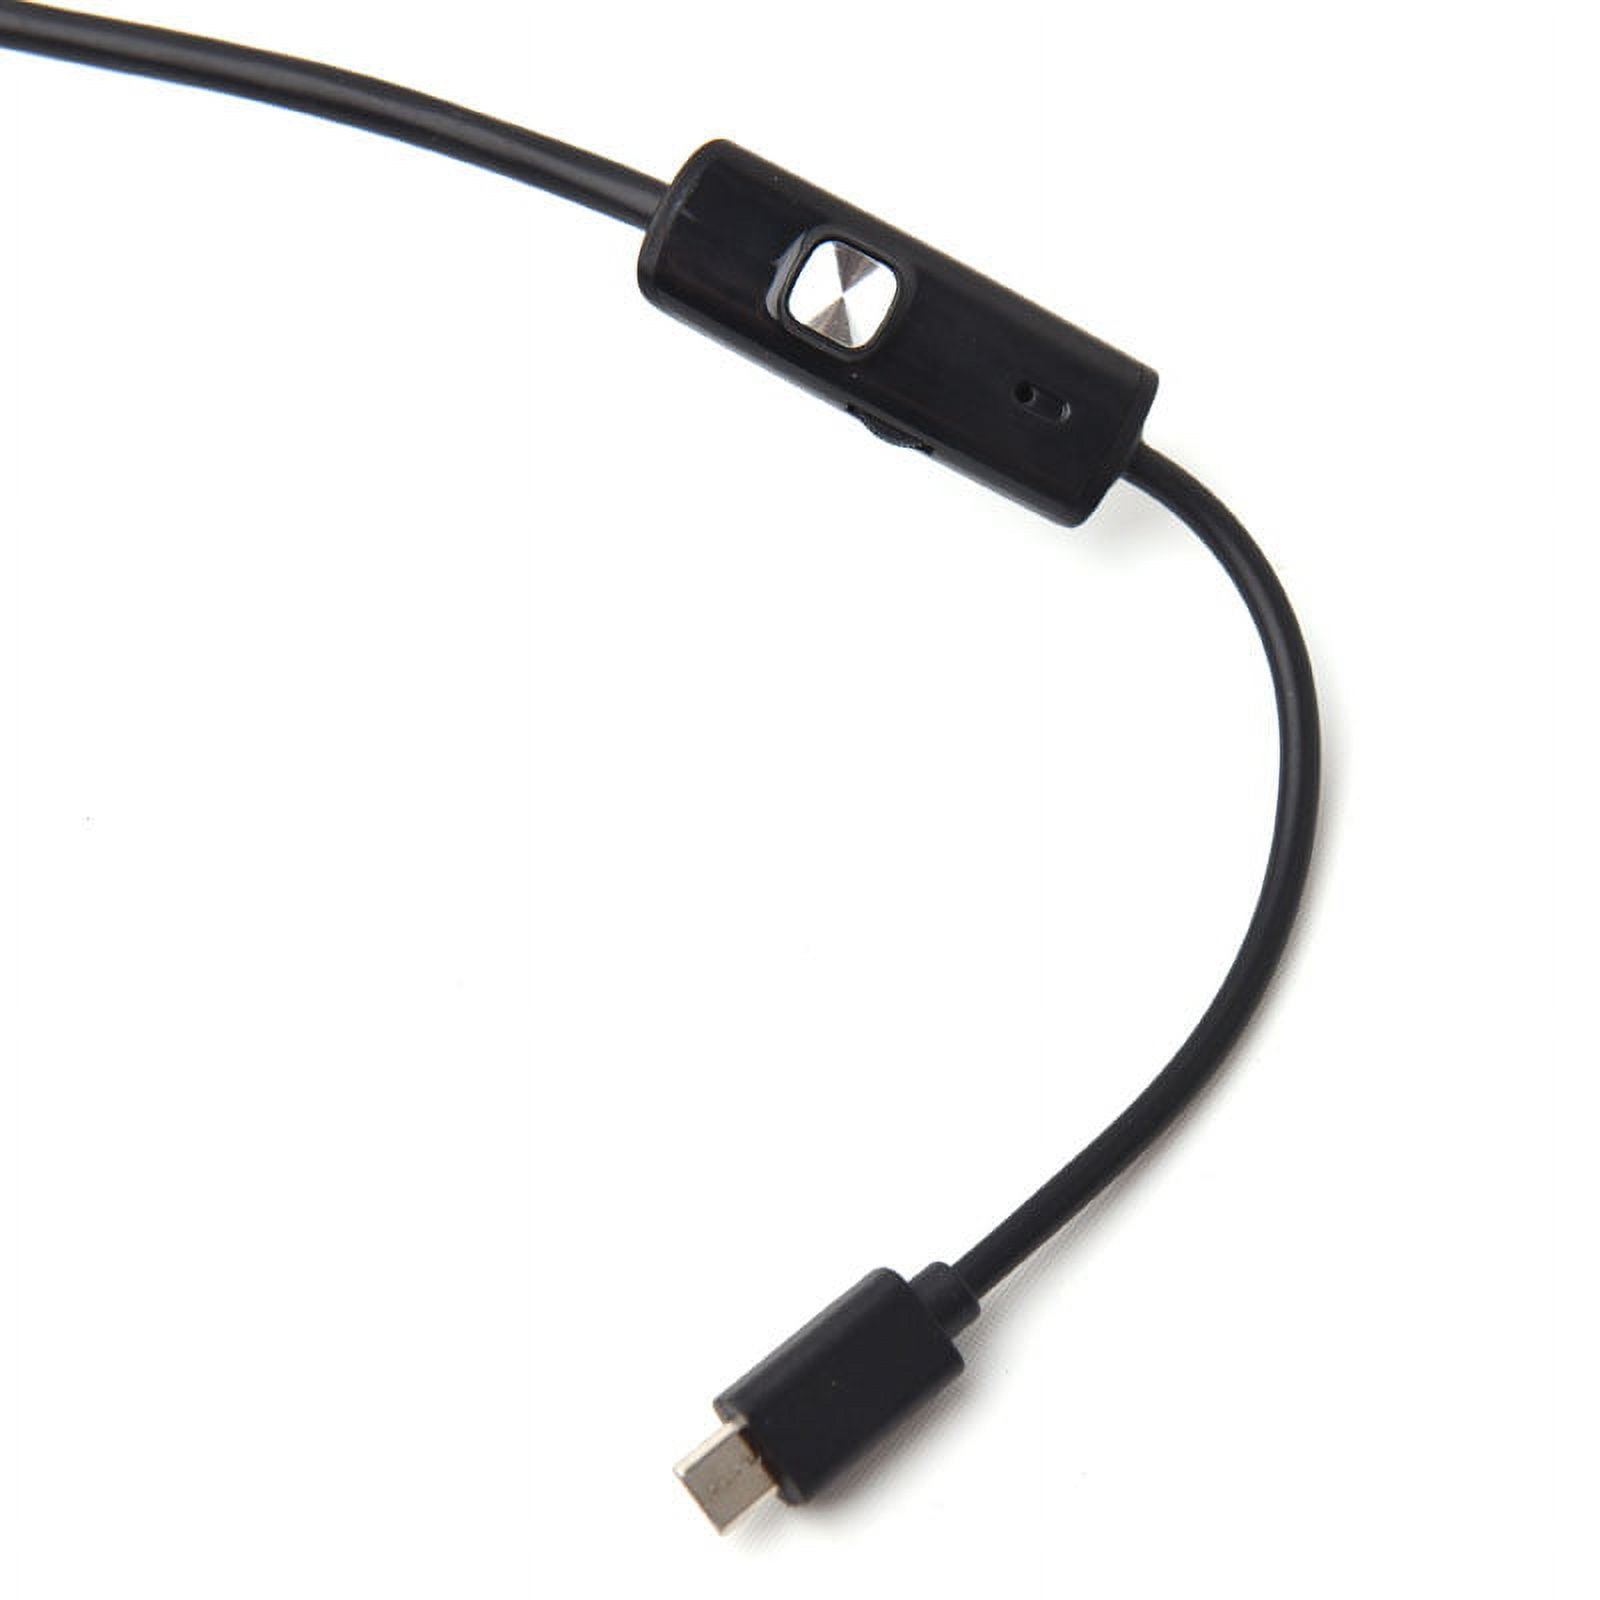 Acheter Endoscope à objectif 6led 7mm, câble USB étanche IP67